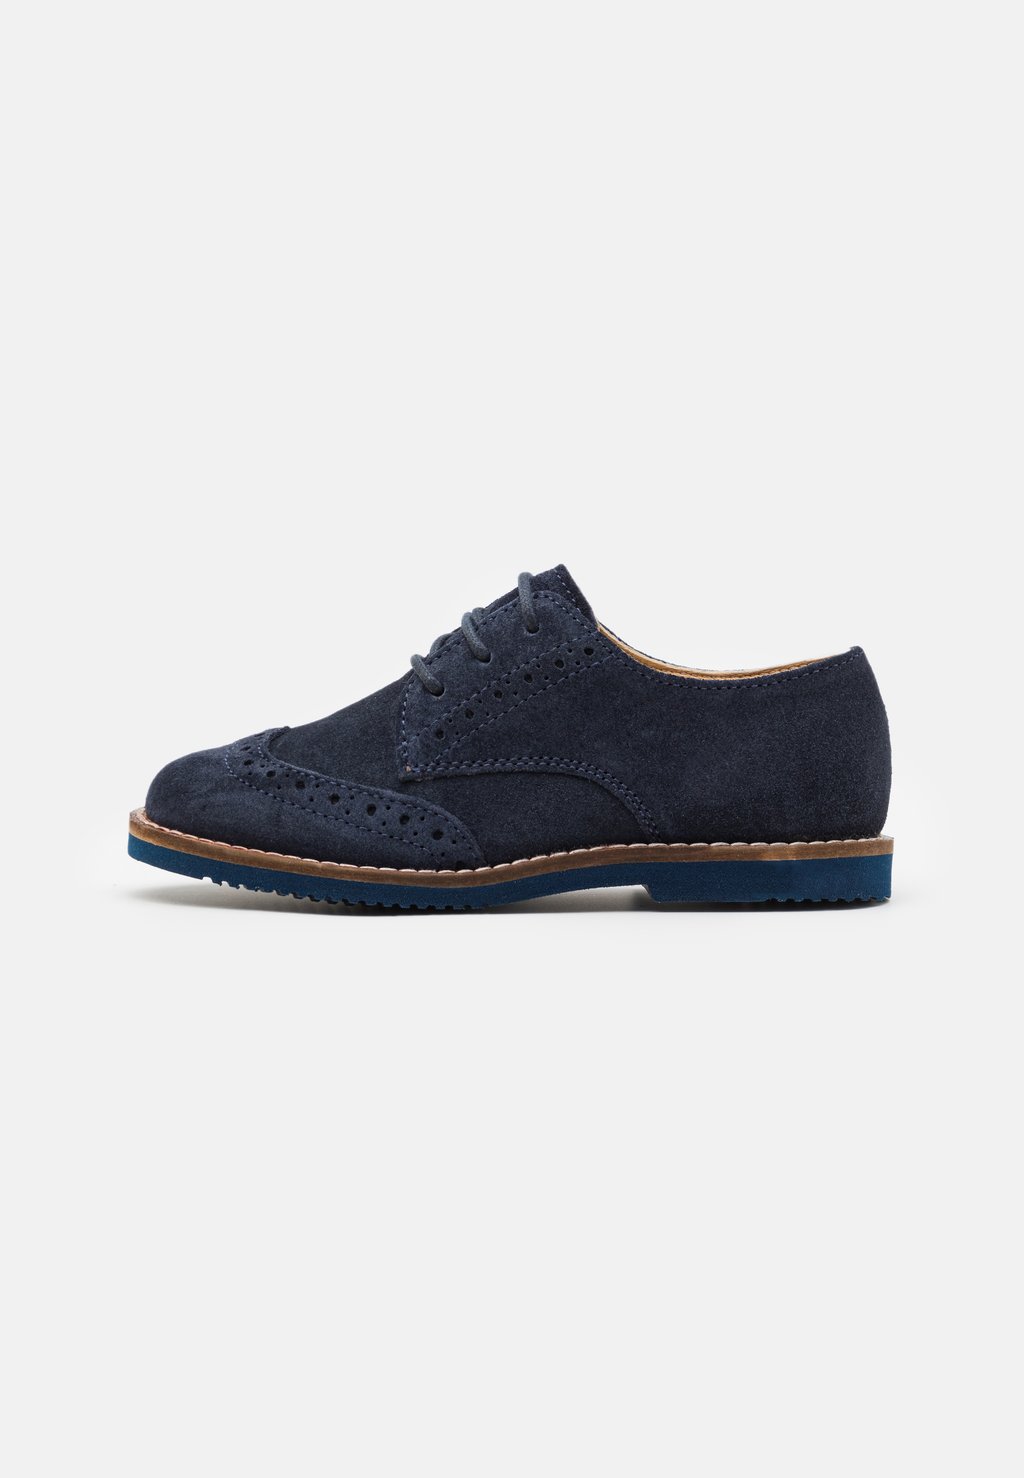 Ботинки LEATHER Friboo, цвет dark blue спортивные туфли на шнуровке leather friboo цвет dark blue